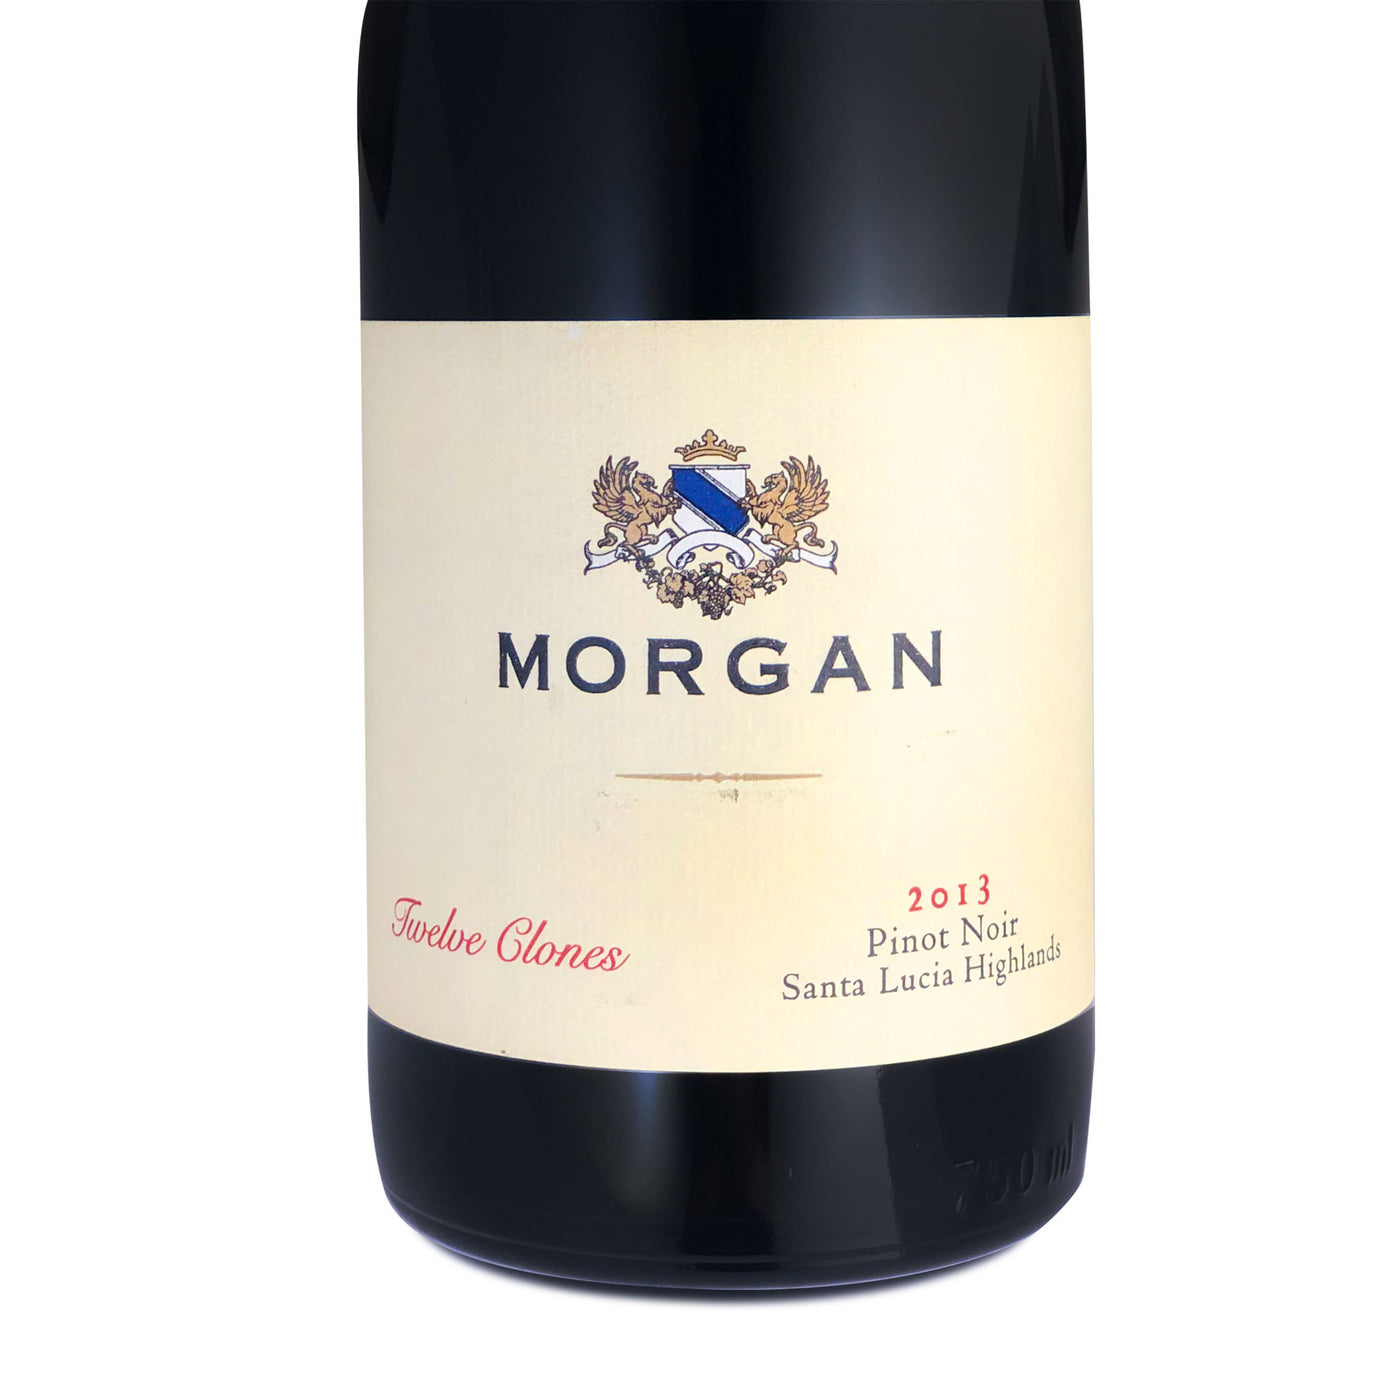 Morgan Twelve Clones Pinot Noir 2013